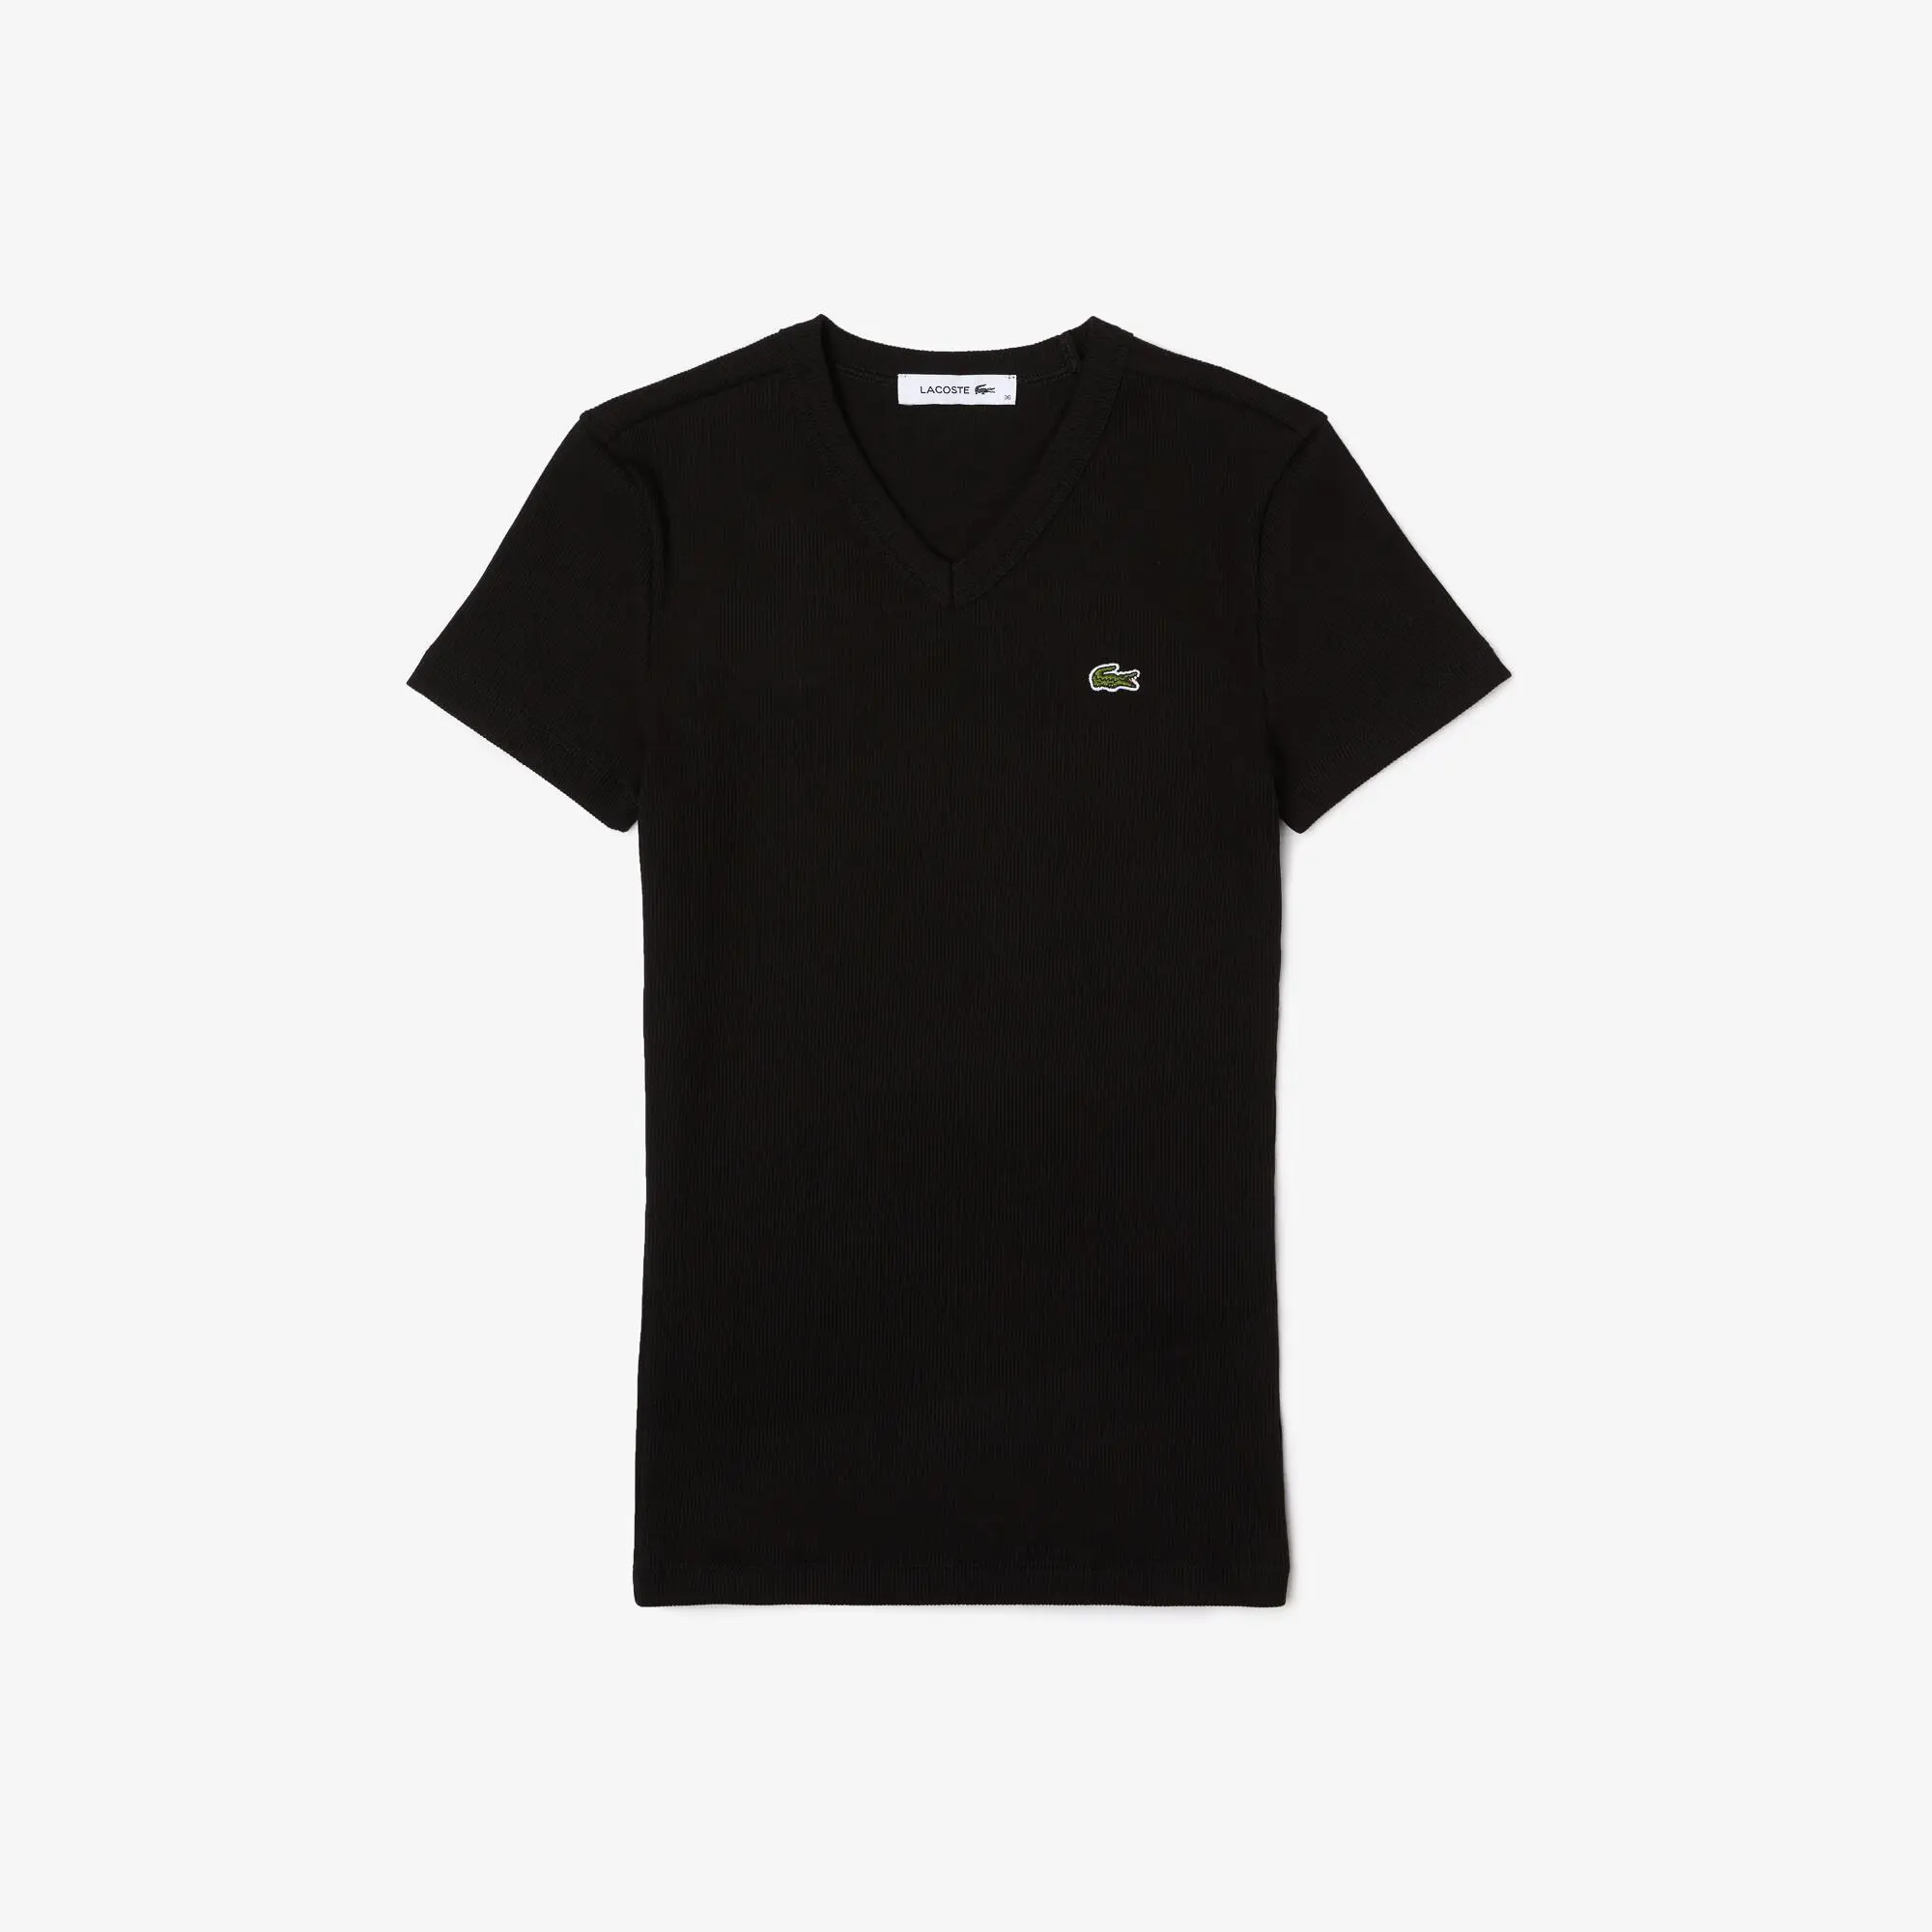 Lacoste Women’s Lacoste Slim Fit Organic Cotton V-neck T-shirt. 2